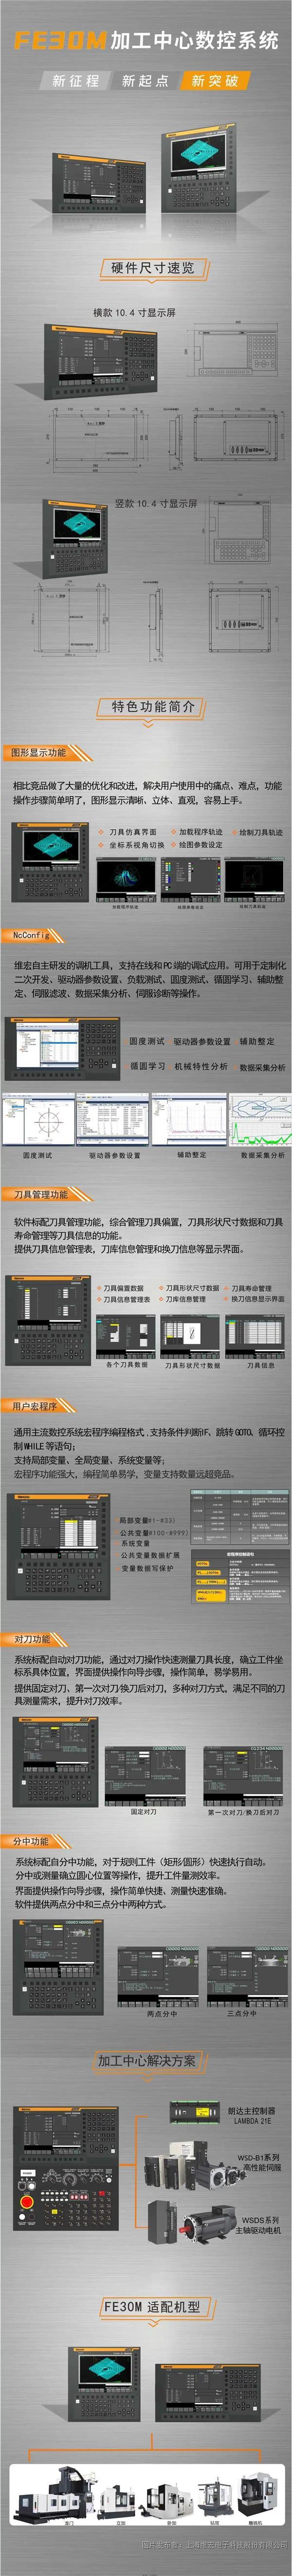 打造更适合中国“工业母机”的高端数控系统